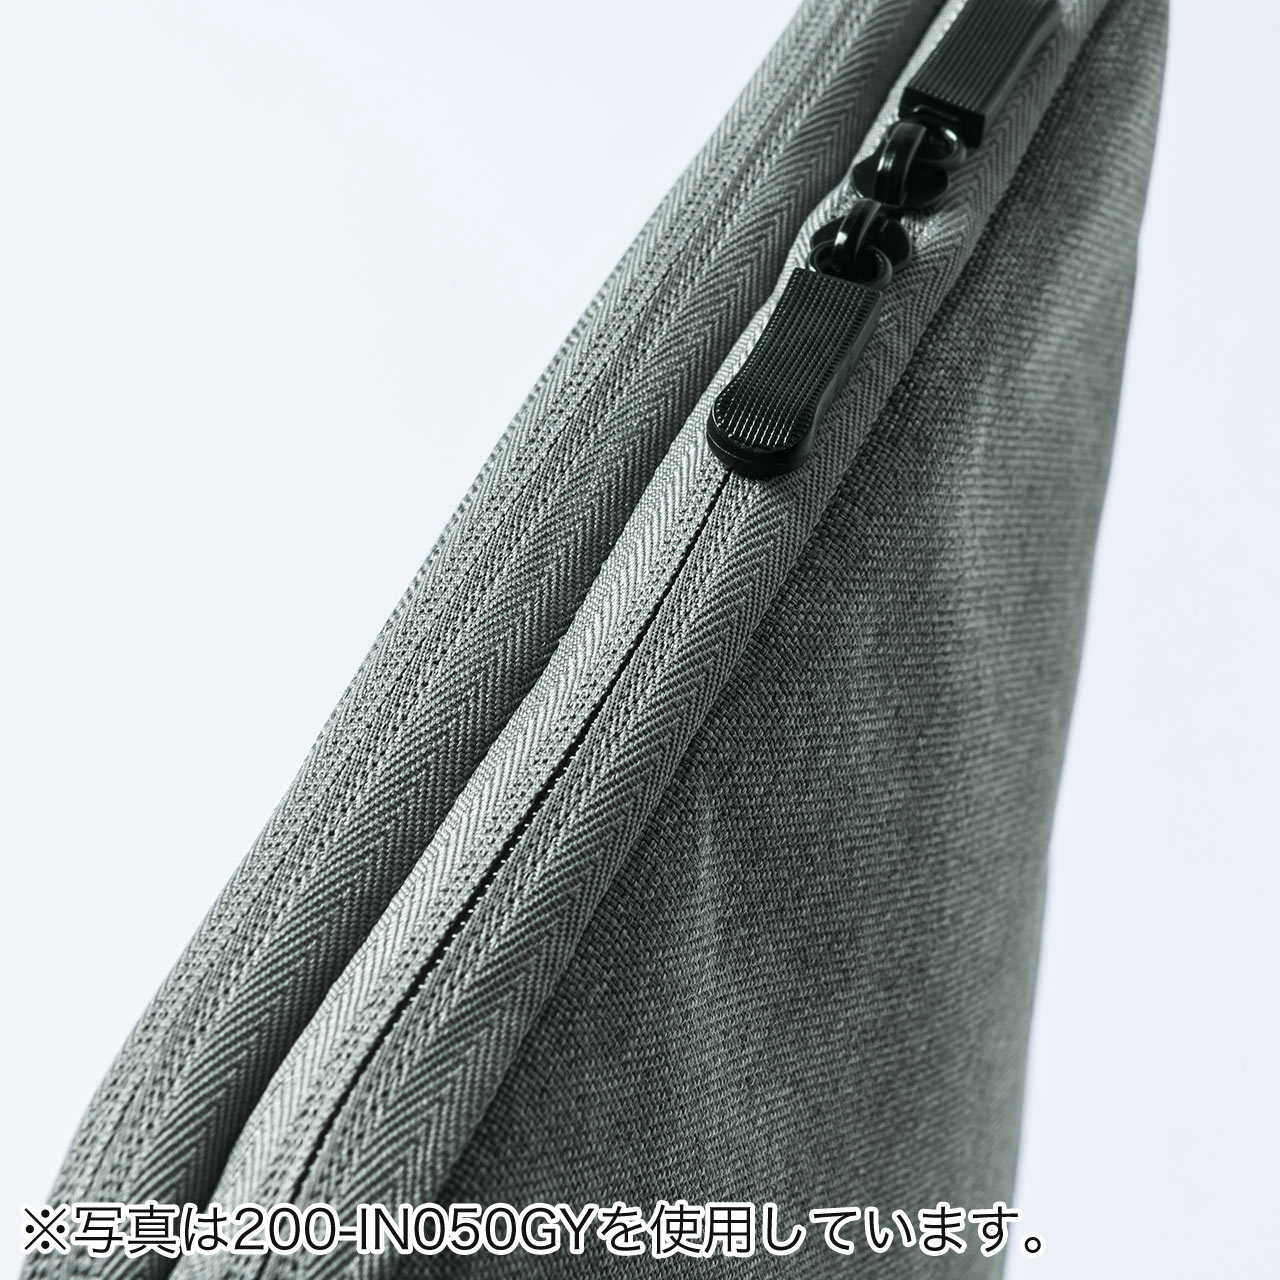 ノートパソコン インナーケース 13.3インチ用 小物ポケット付き 両面収納 ネイビー 200-IN050NV